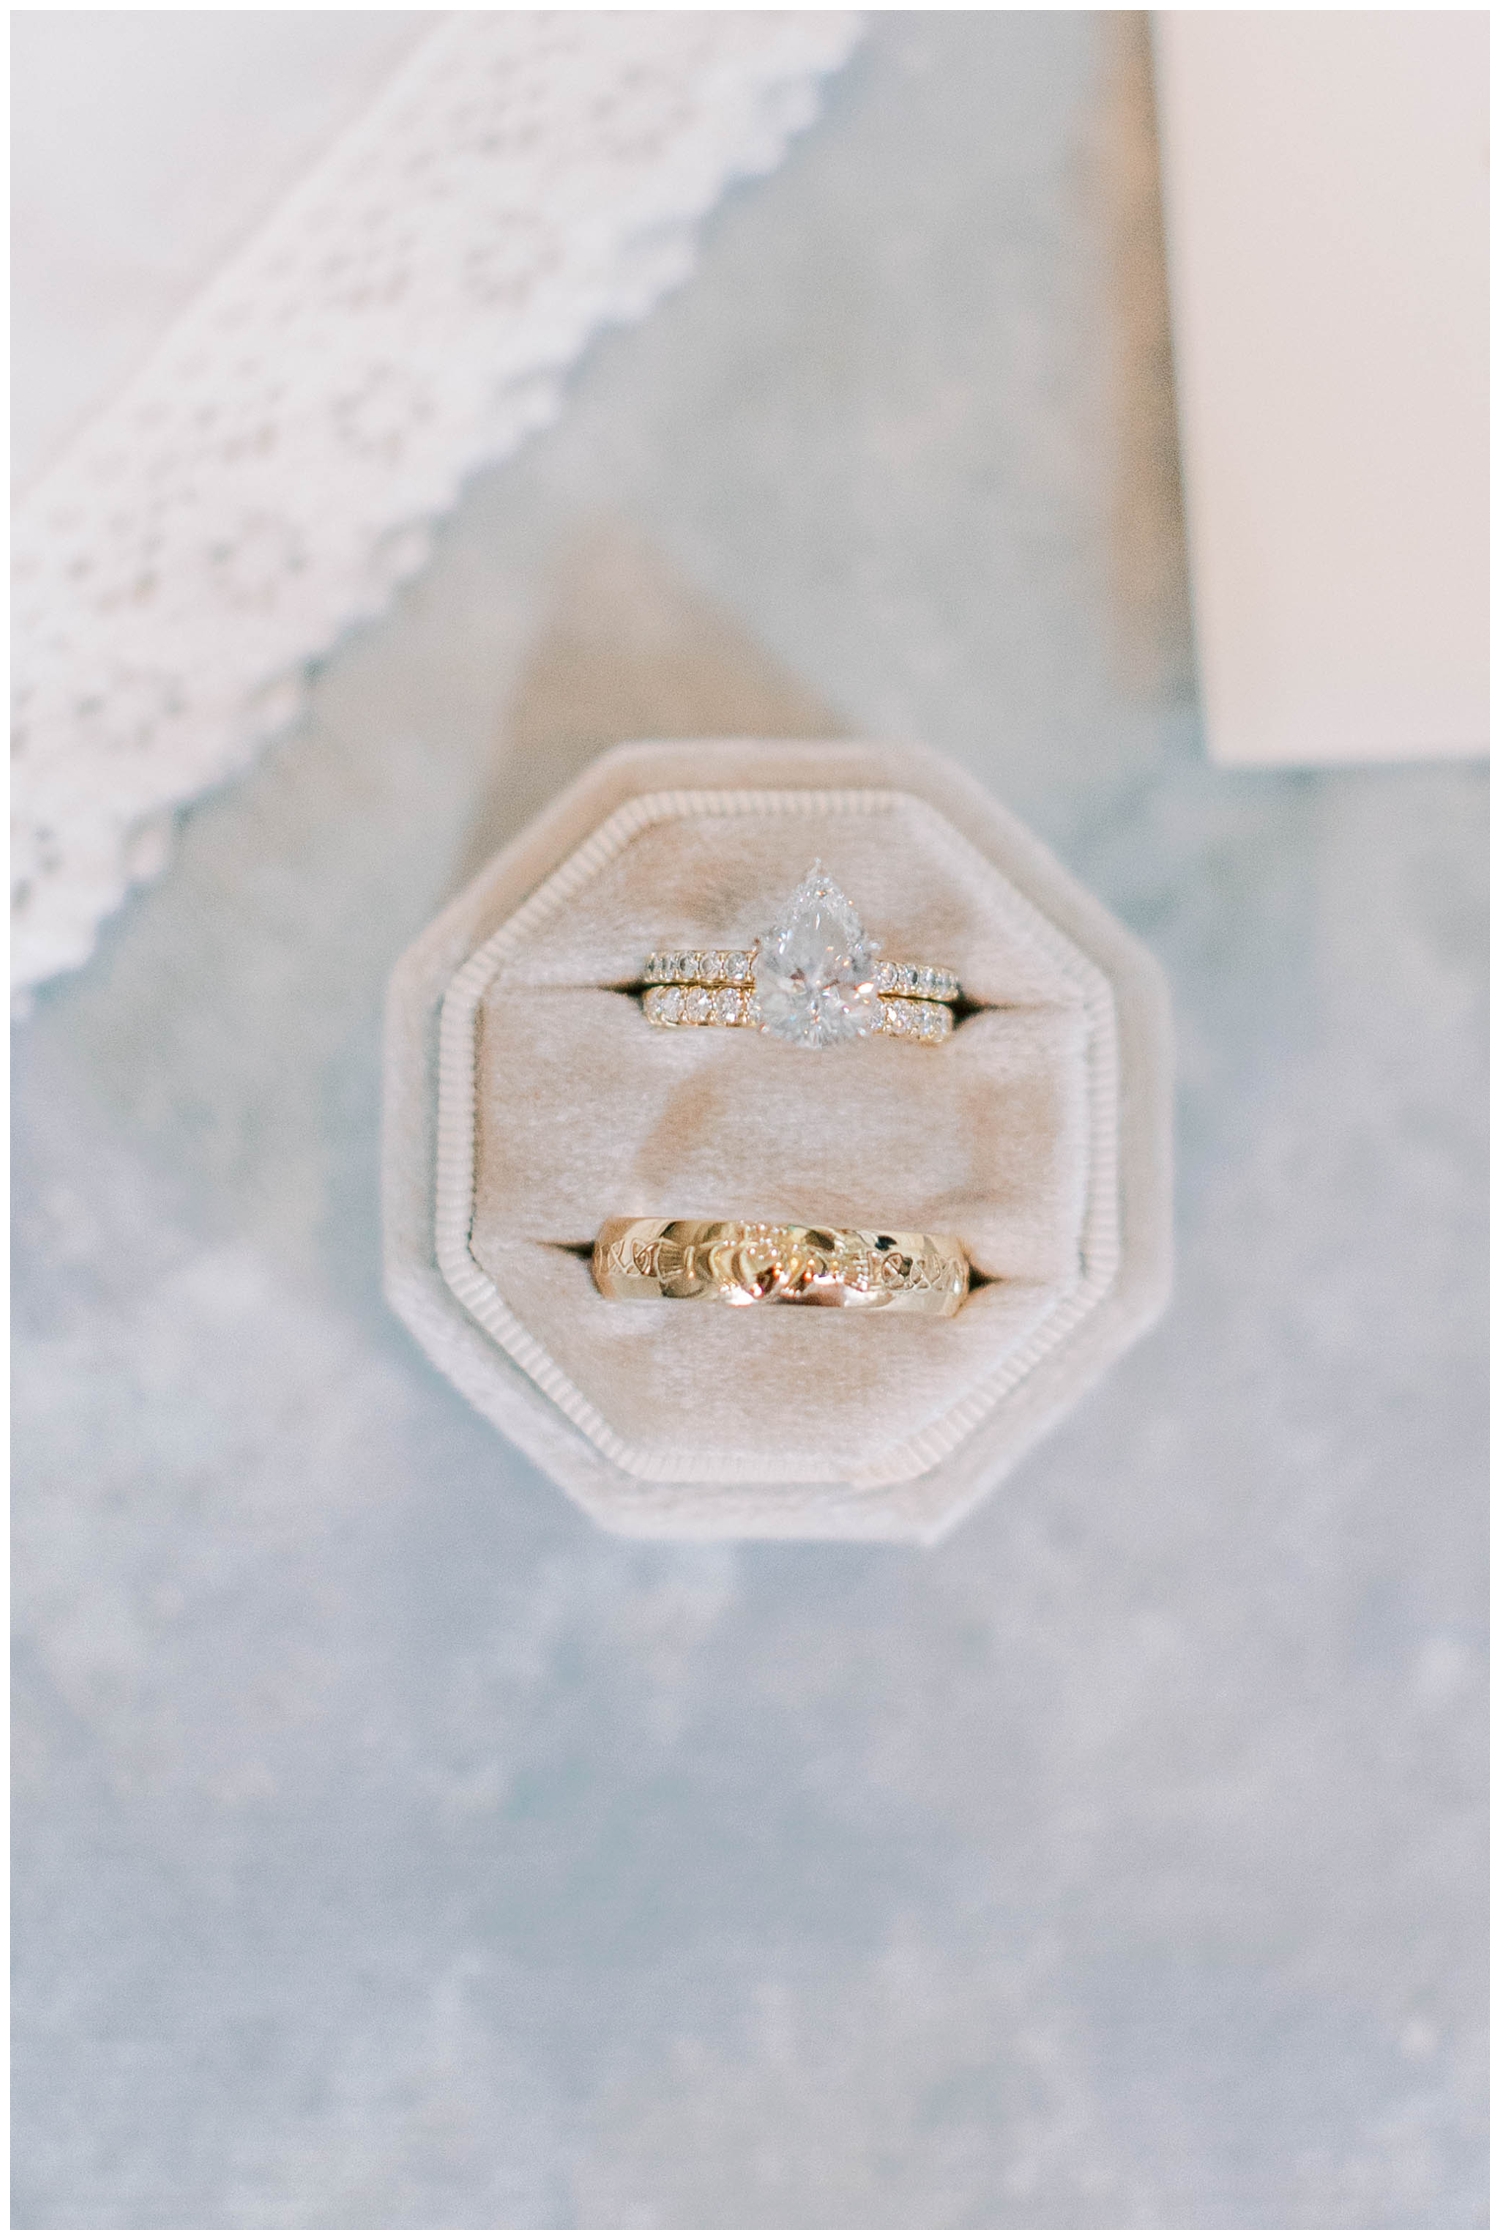 gold wedding ring in cream ring box